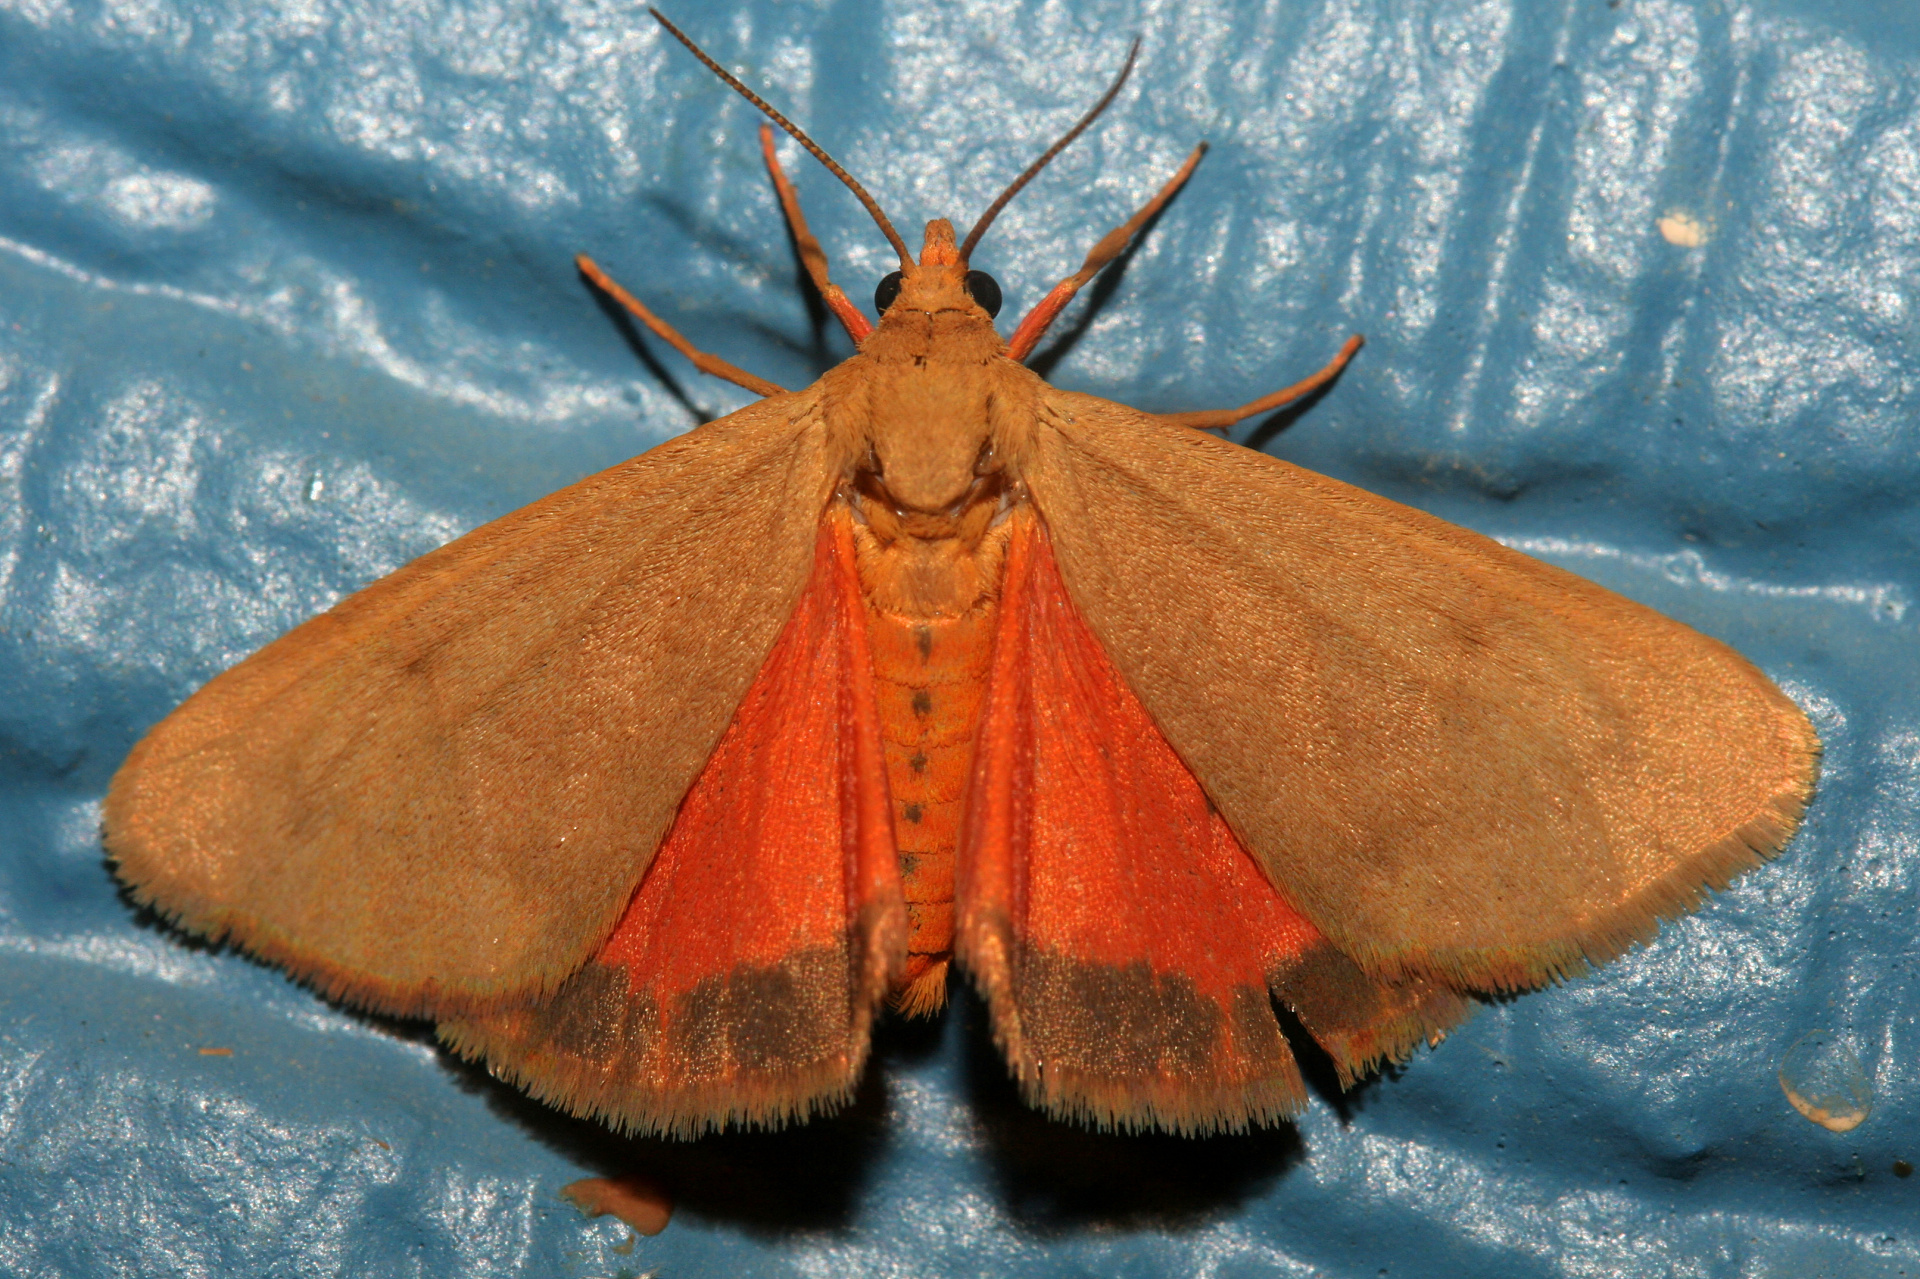 Holomelina aurantiaca (Podróże » USA: Epopeja Czejeńska » Zwierzęta » Owady » Motyle i ćmy » Arctiidae)